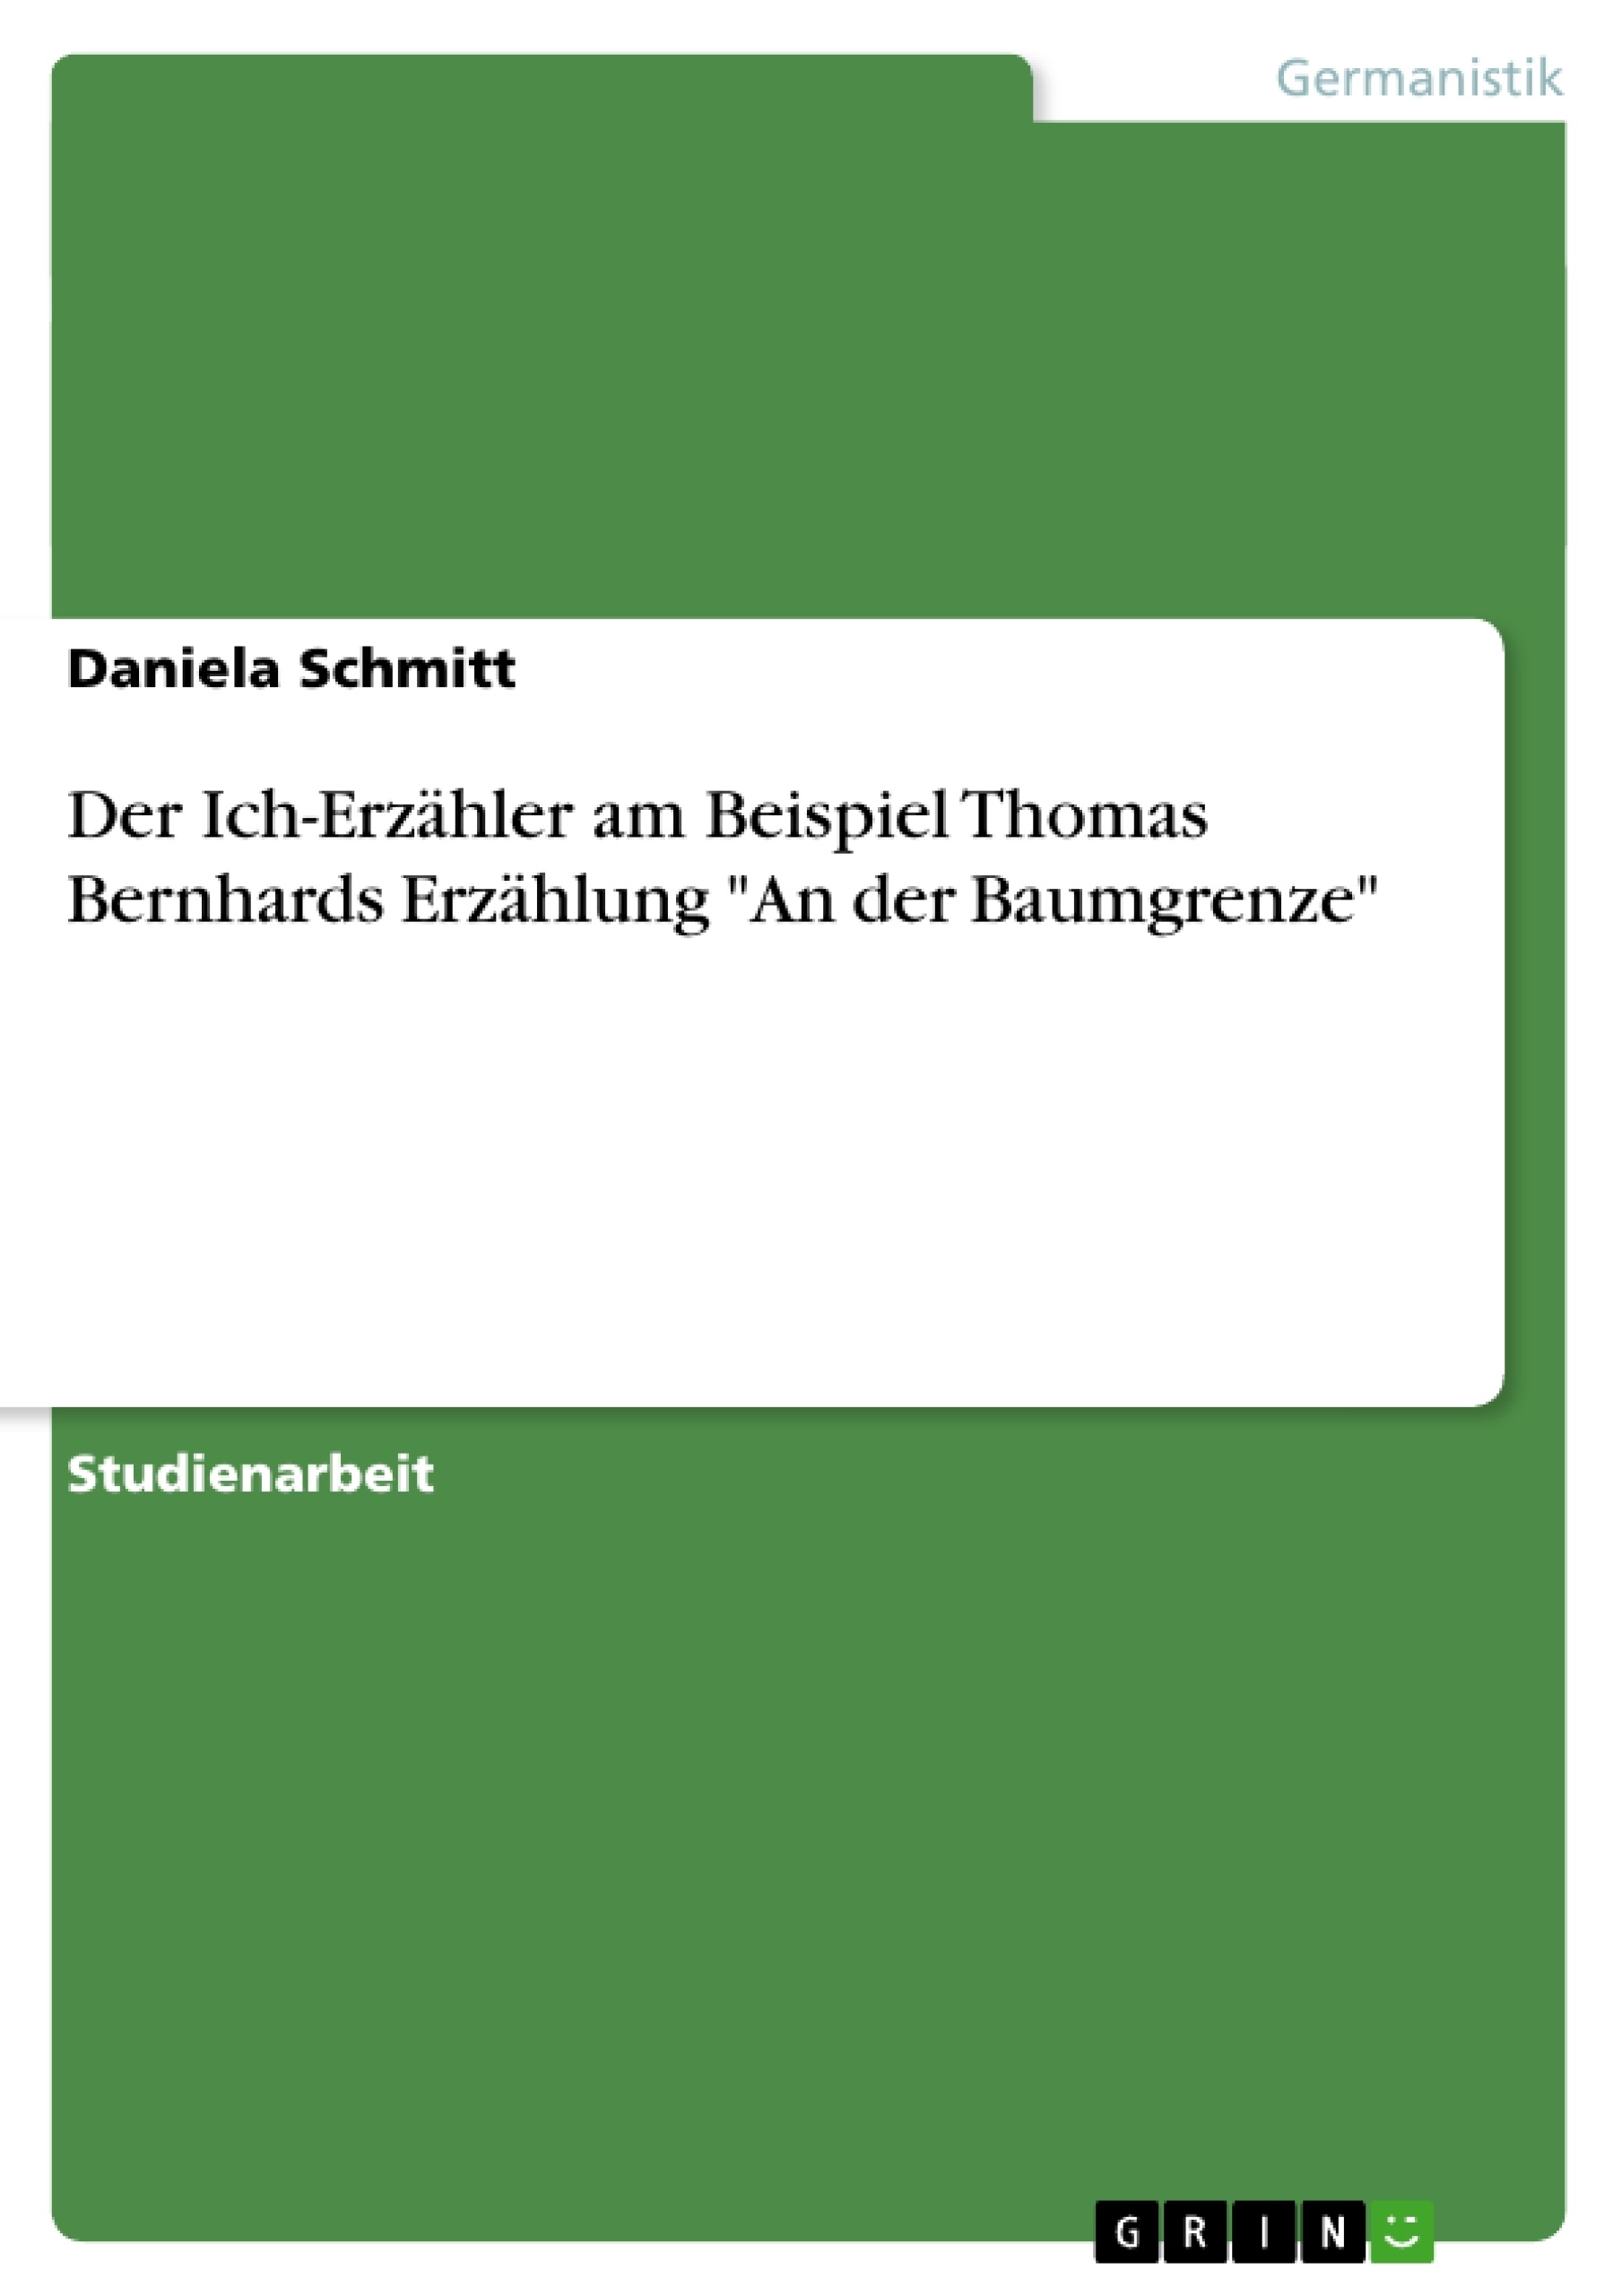 Title: Der Ich-Erzähler am Beispiel Thomas Bernhards Erzählung "An der Baumgrenze"